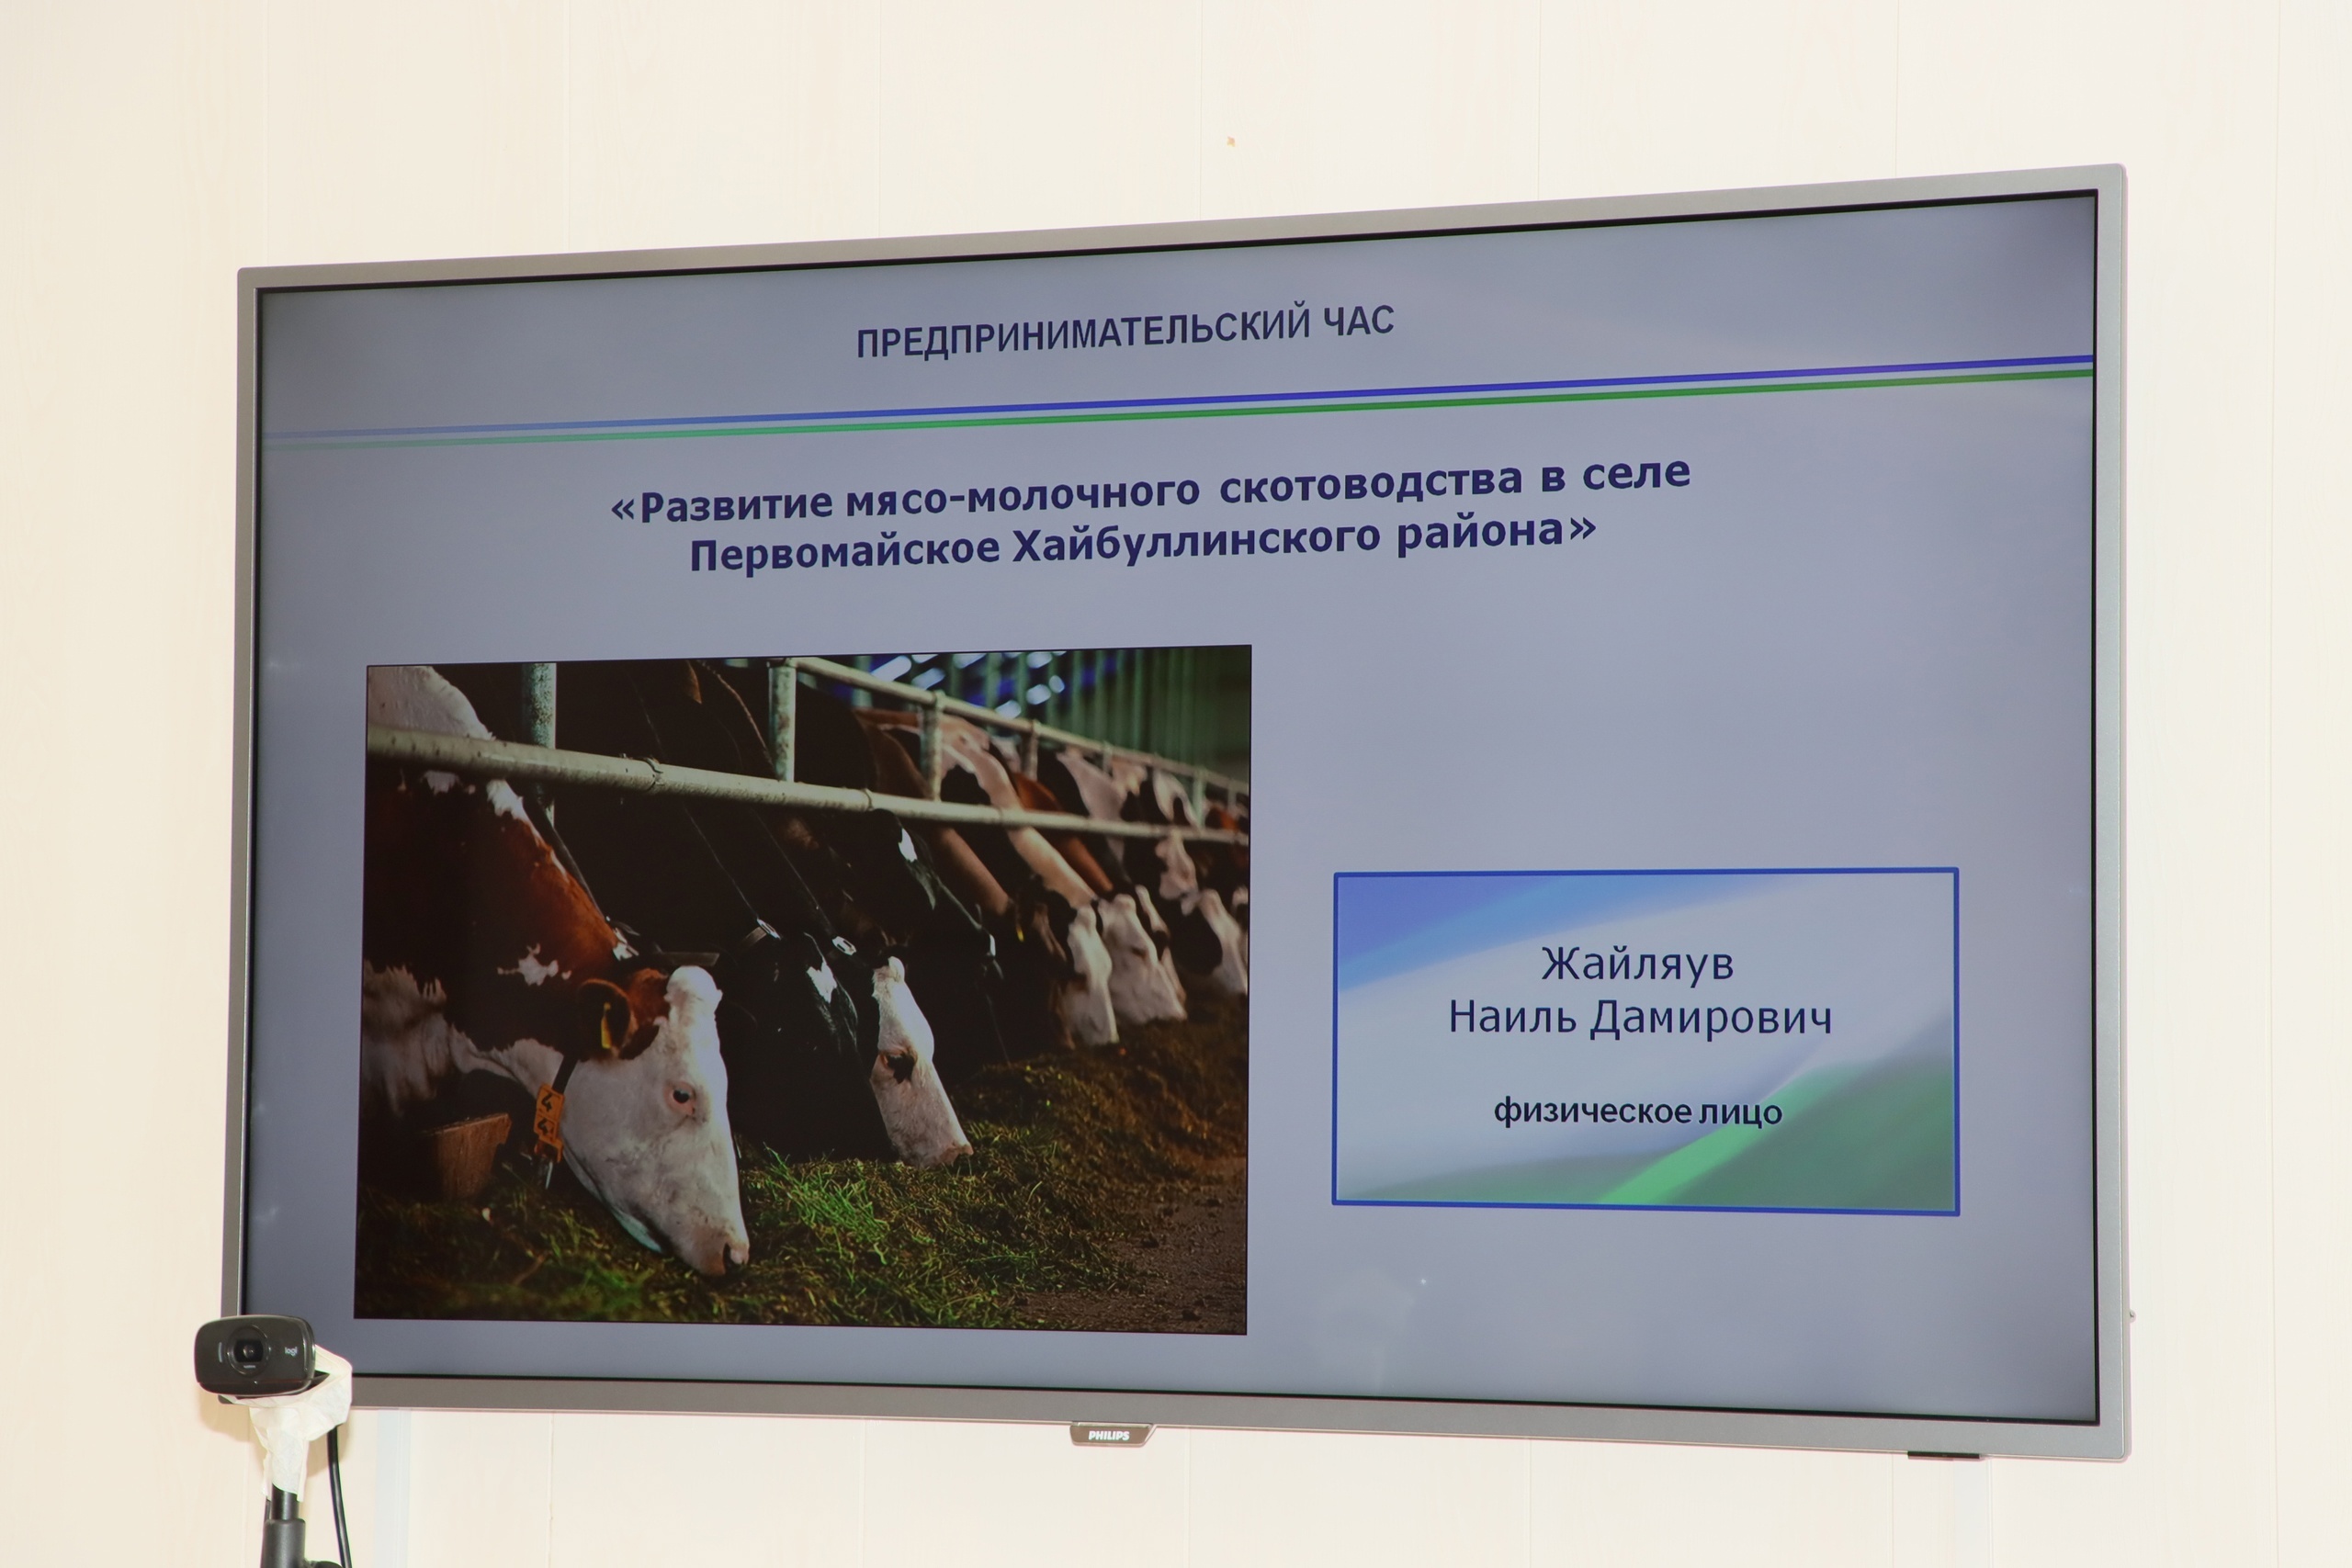 На «Предпринимательском часе» В Хайбуллинском районе рассмотрен проект по развитию мясо-молочного скотоводства